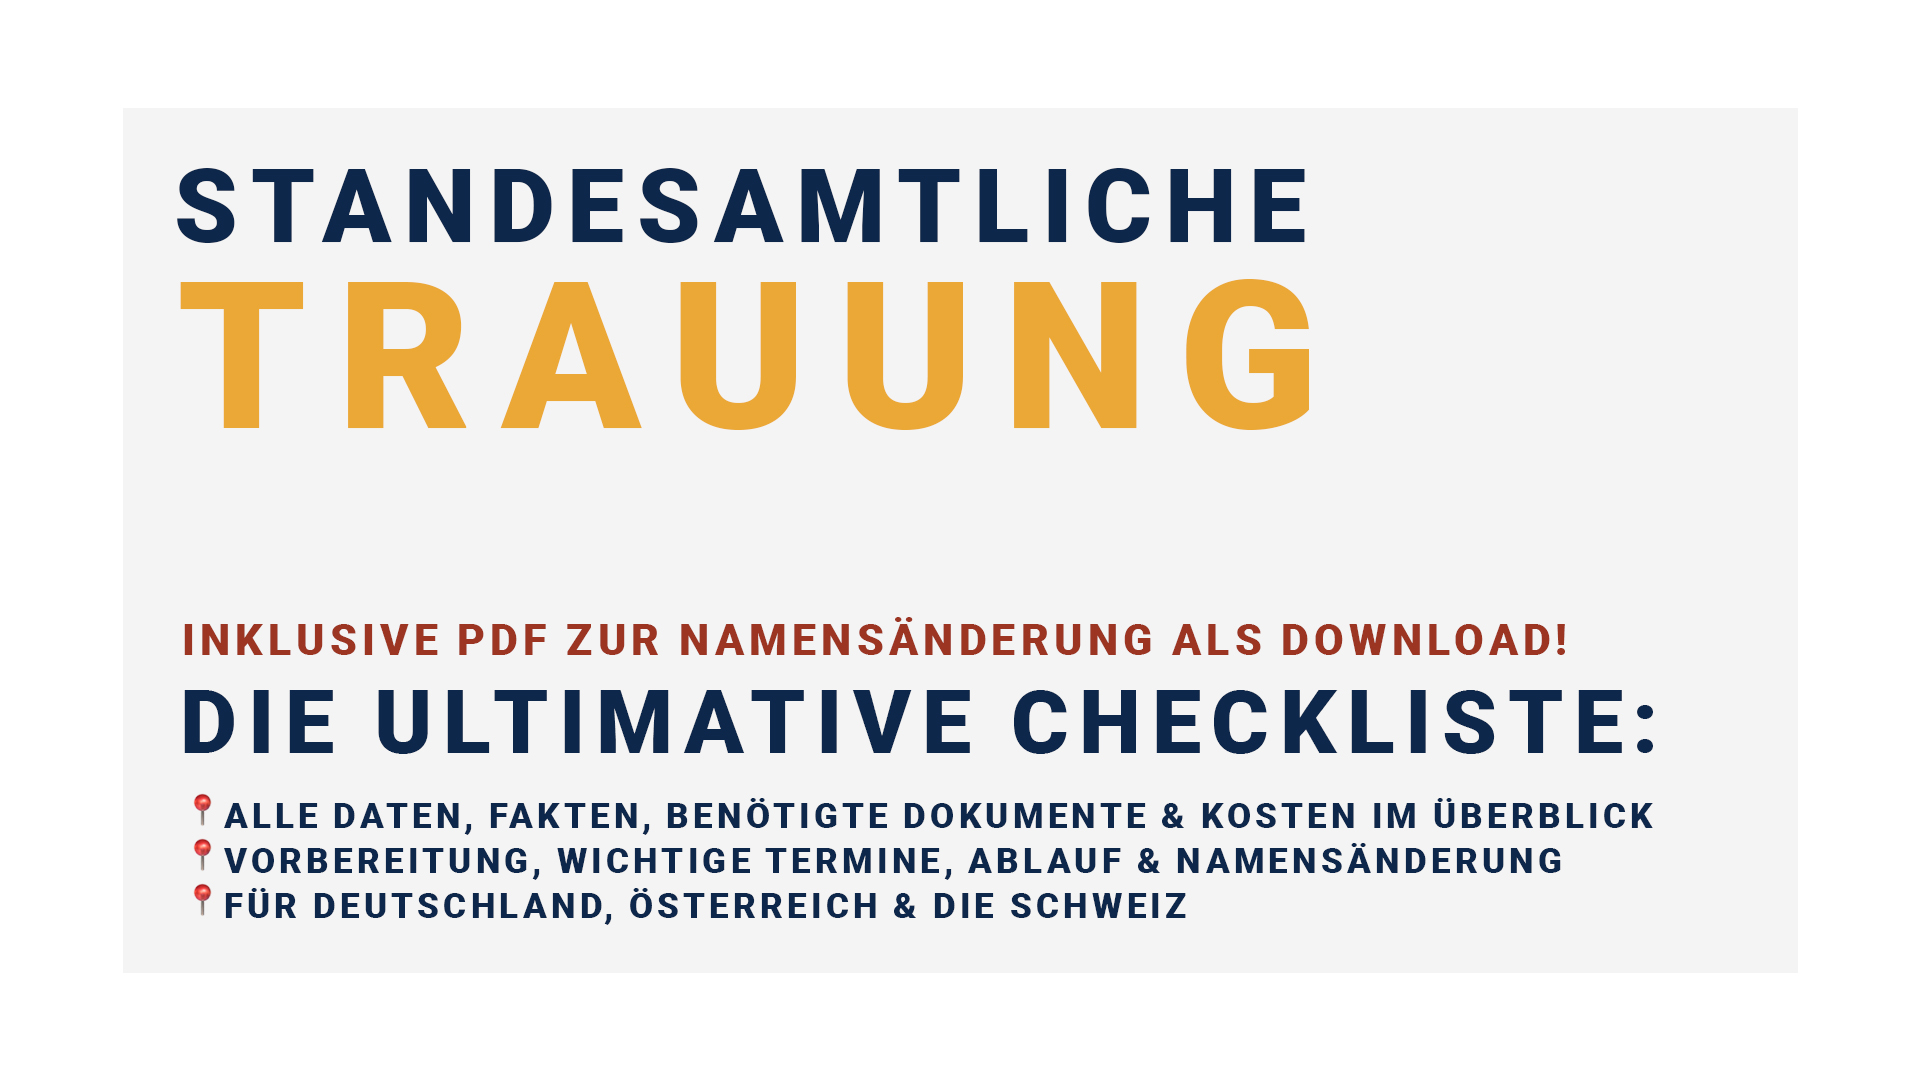 Die ultimative Checkliste für deine standesamtliche Trauung in Deutschland, Österreich oder der Schweiz